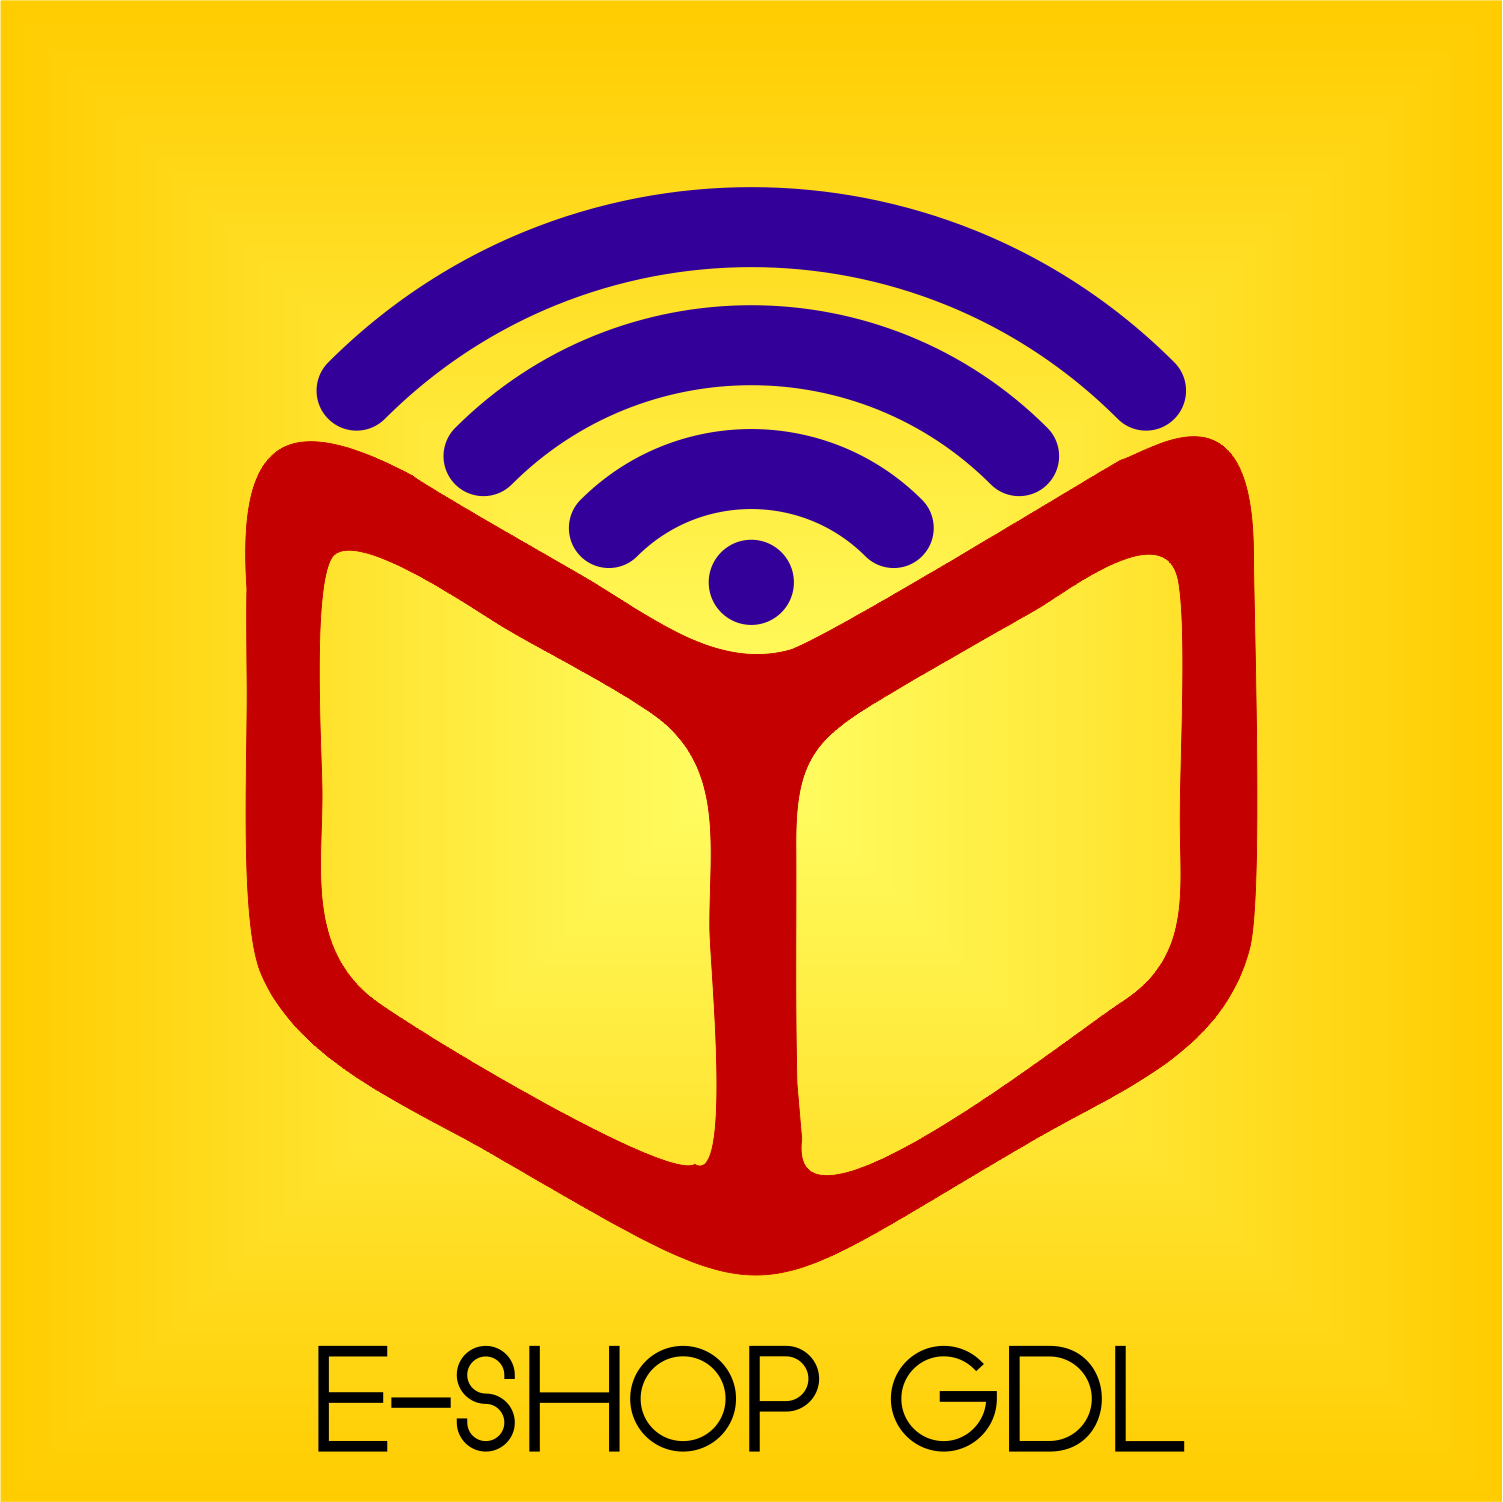 E-SHOP GDL